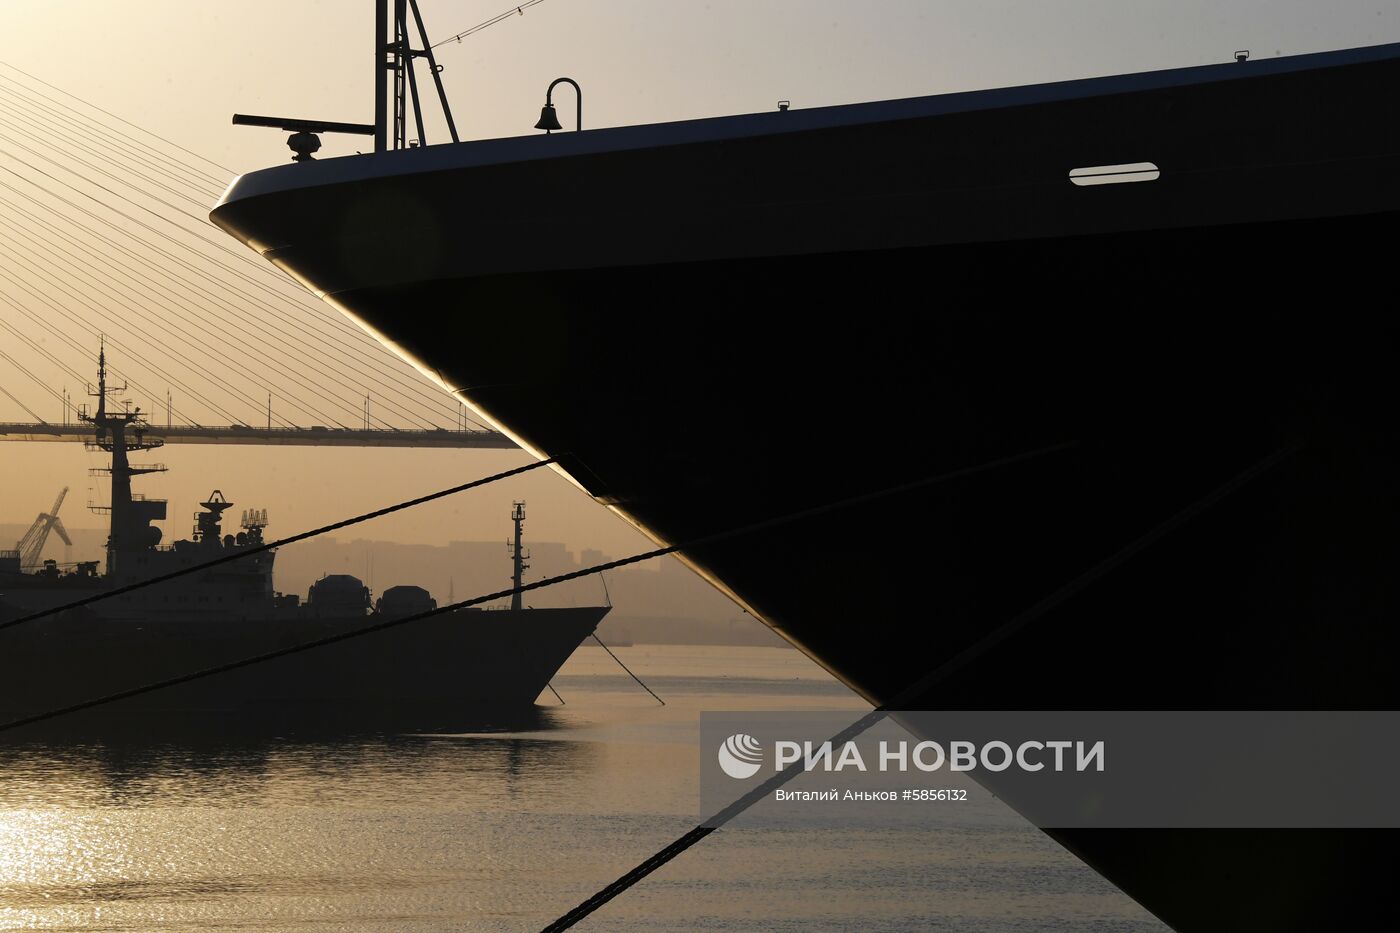 Прибытие круизных лайнеров Costa neoRomantica и Westerdam в порт Владивостока